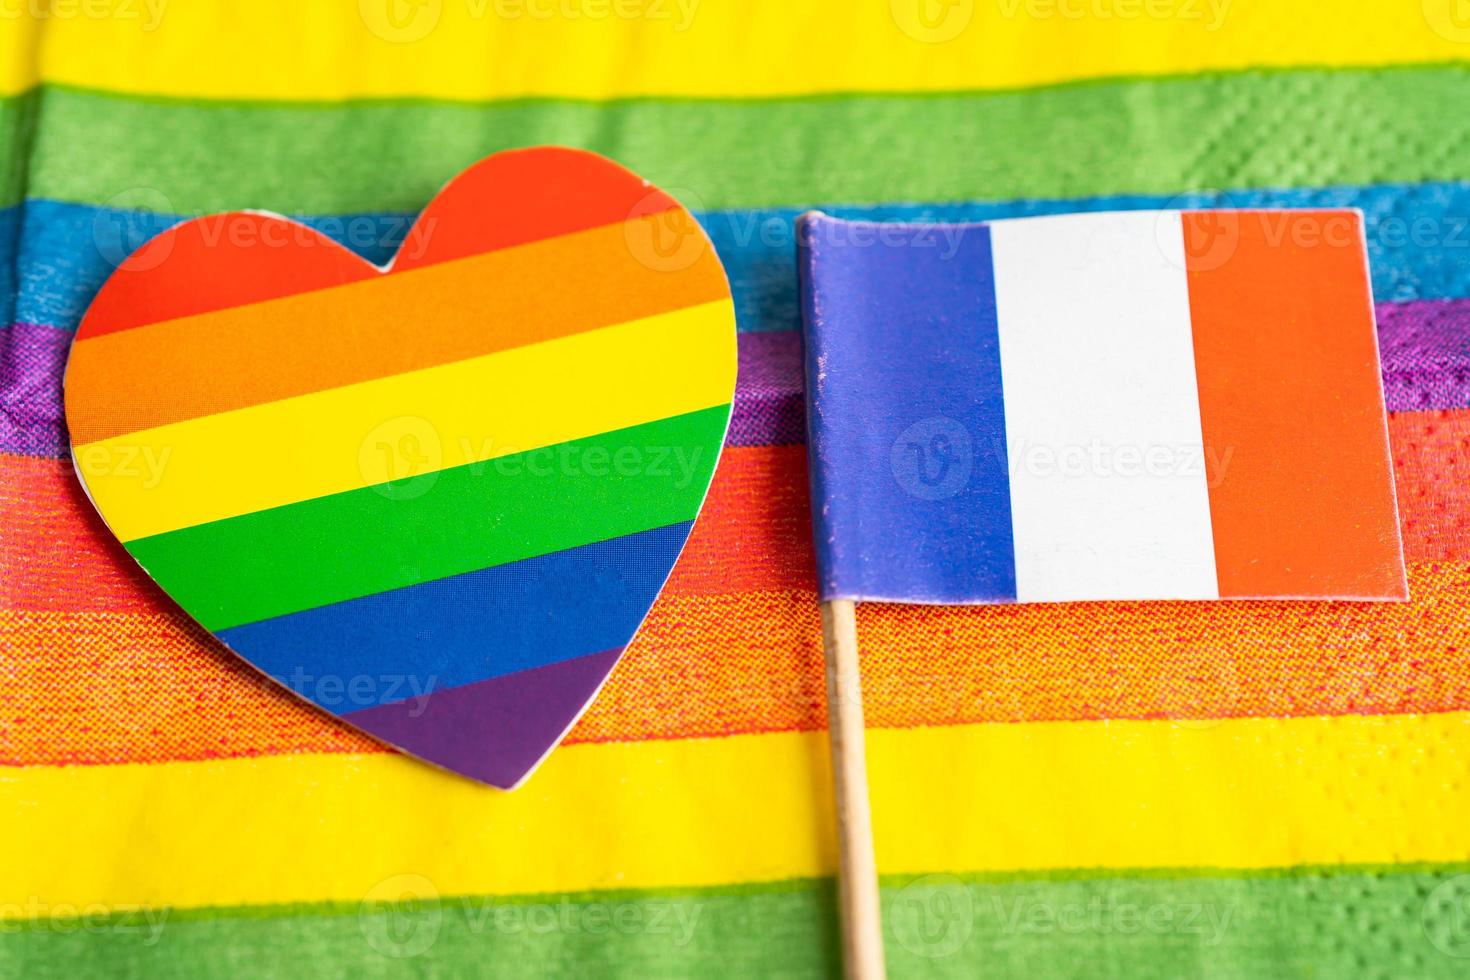 Frankrike flagga på regnbåge bakgrund symbol av HBTQ Gay stolthet månad social rörelse regnbåge flagga är en symbol av lesbisk, Gay, bisexuell, transpersoner, mänsklig rättigheter, tolerans och fred. foto